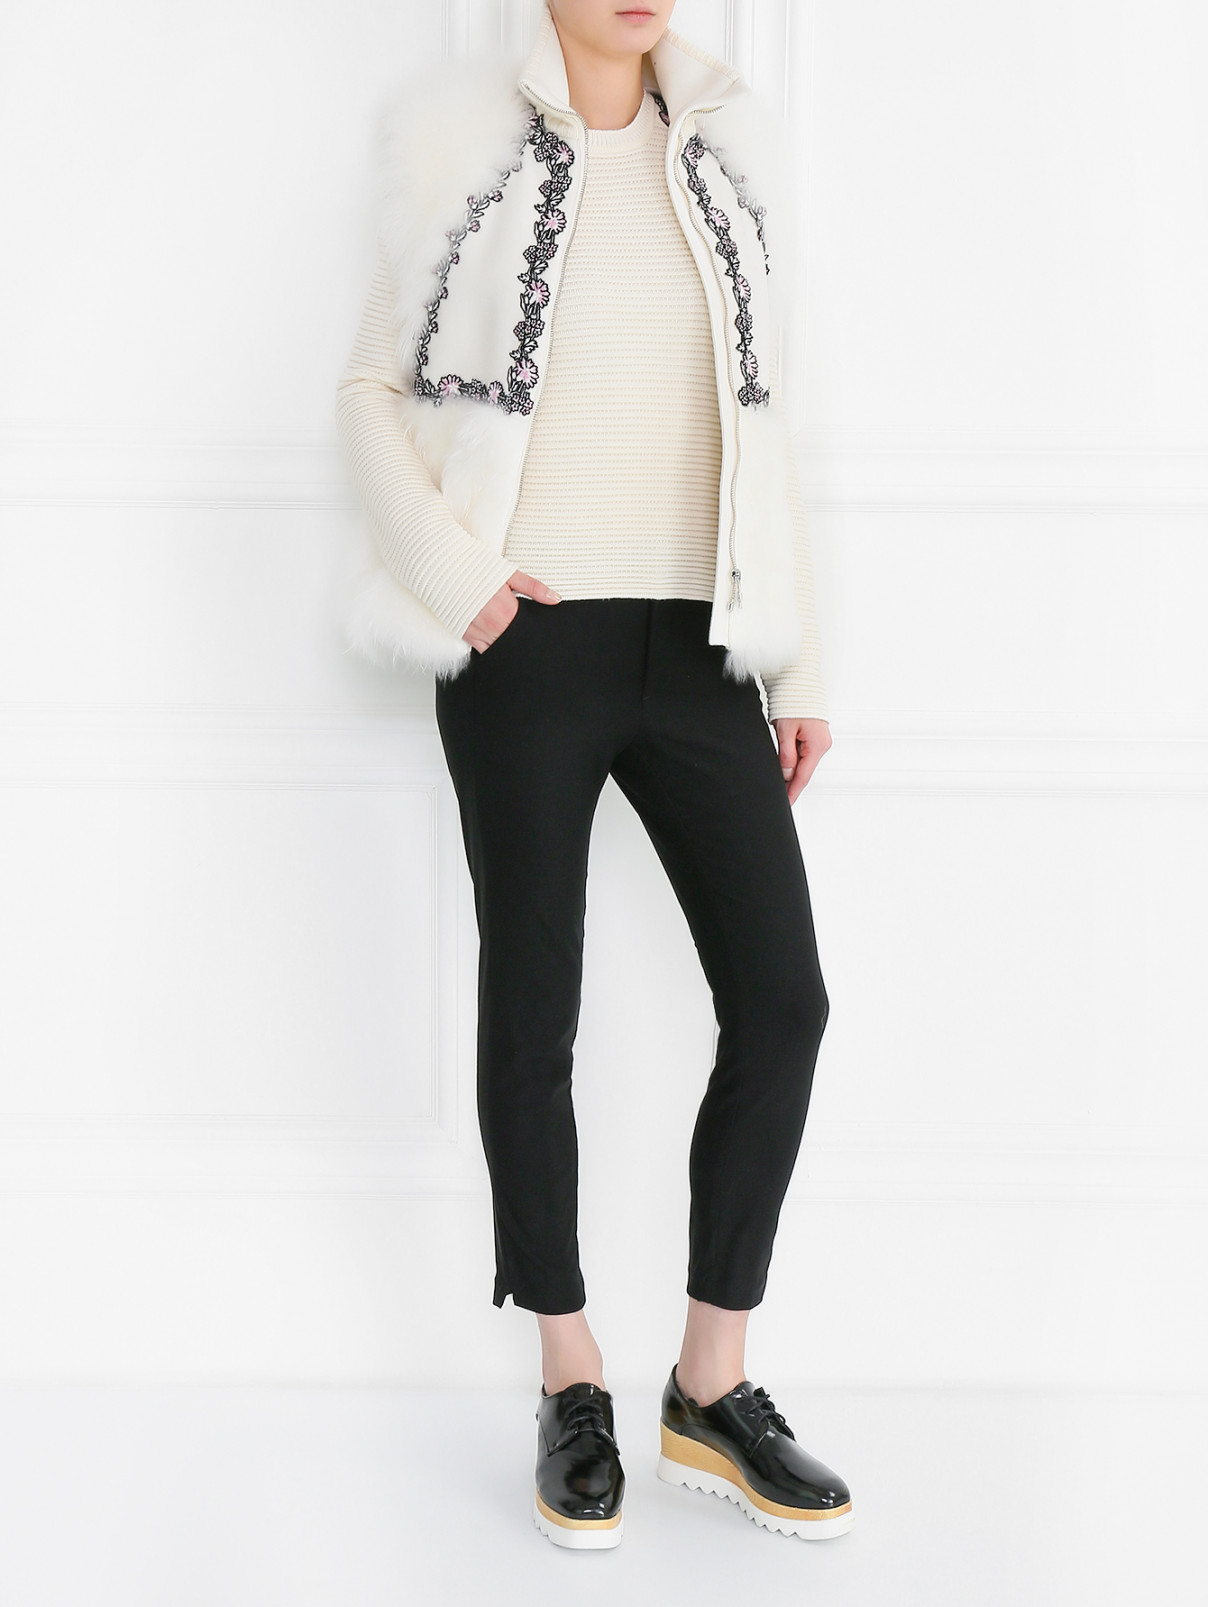 Джемпер из шерсти фактурной вязки с декоративной отделкой Moncler  –  Модель Общий вид  – Цвет:  Белый